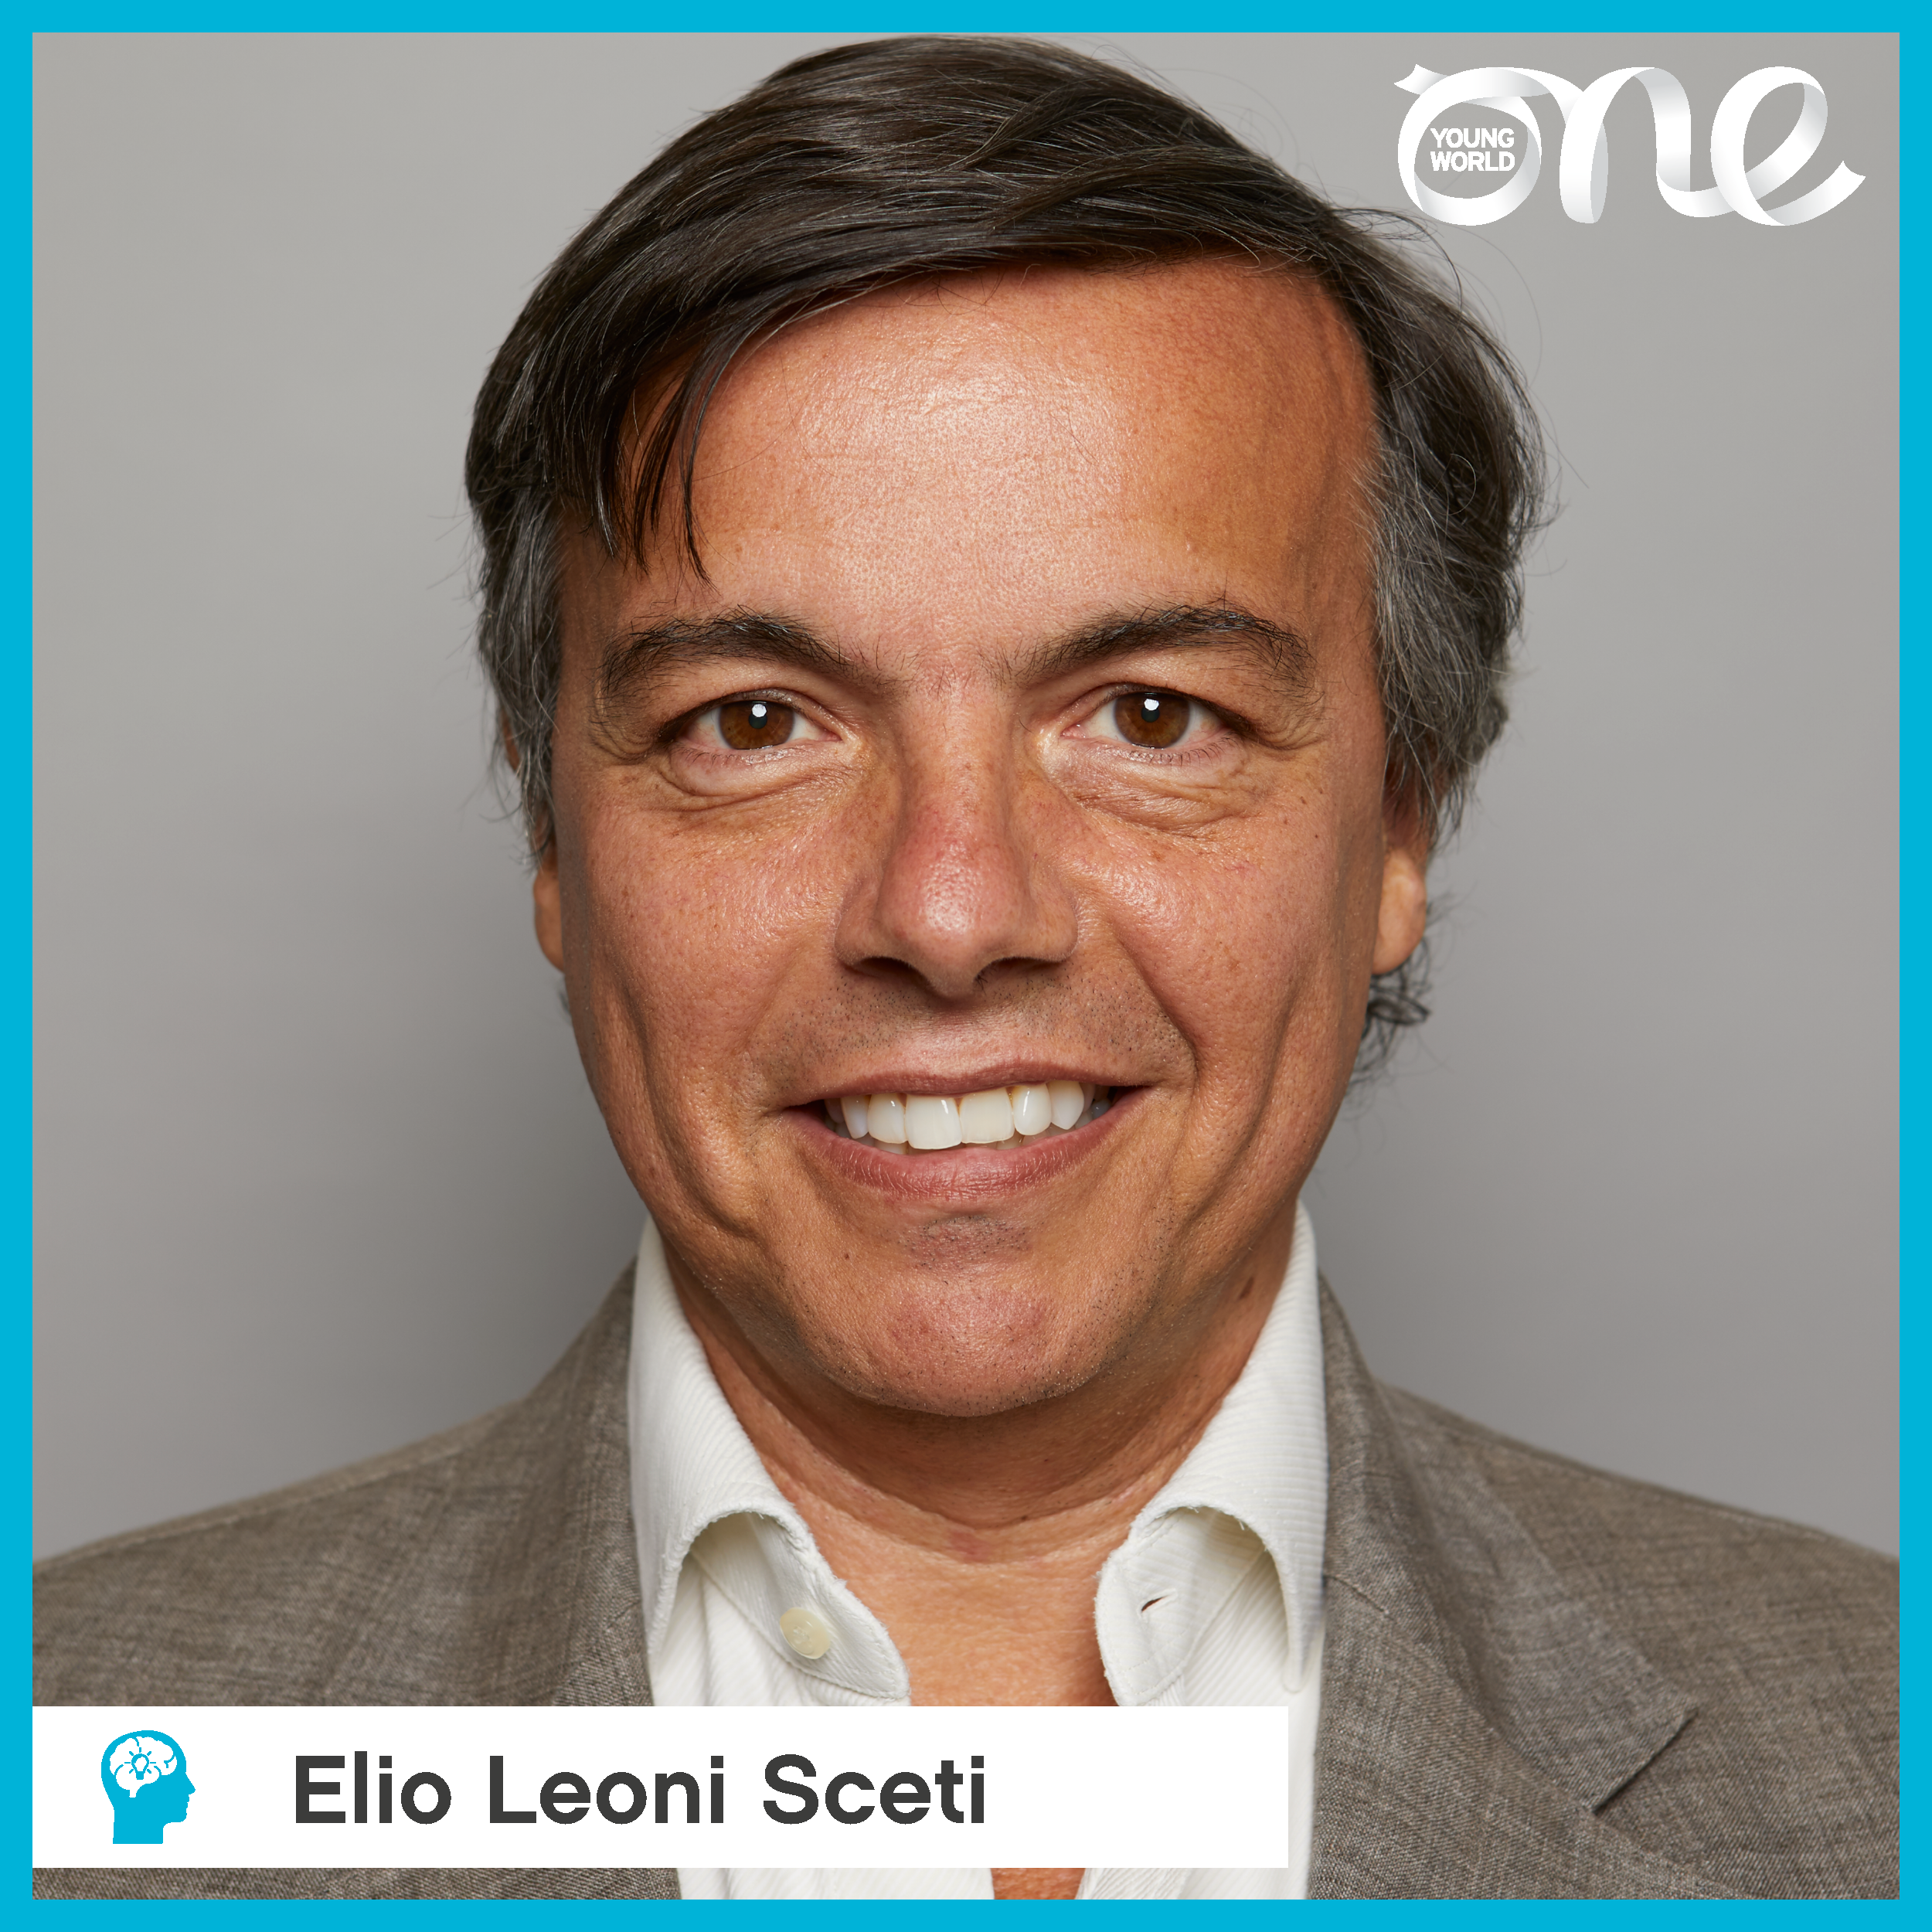 Elio Leoni Sceti